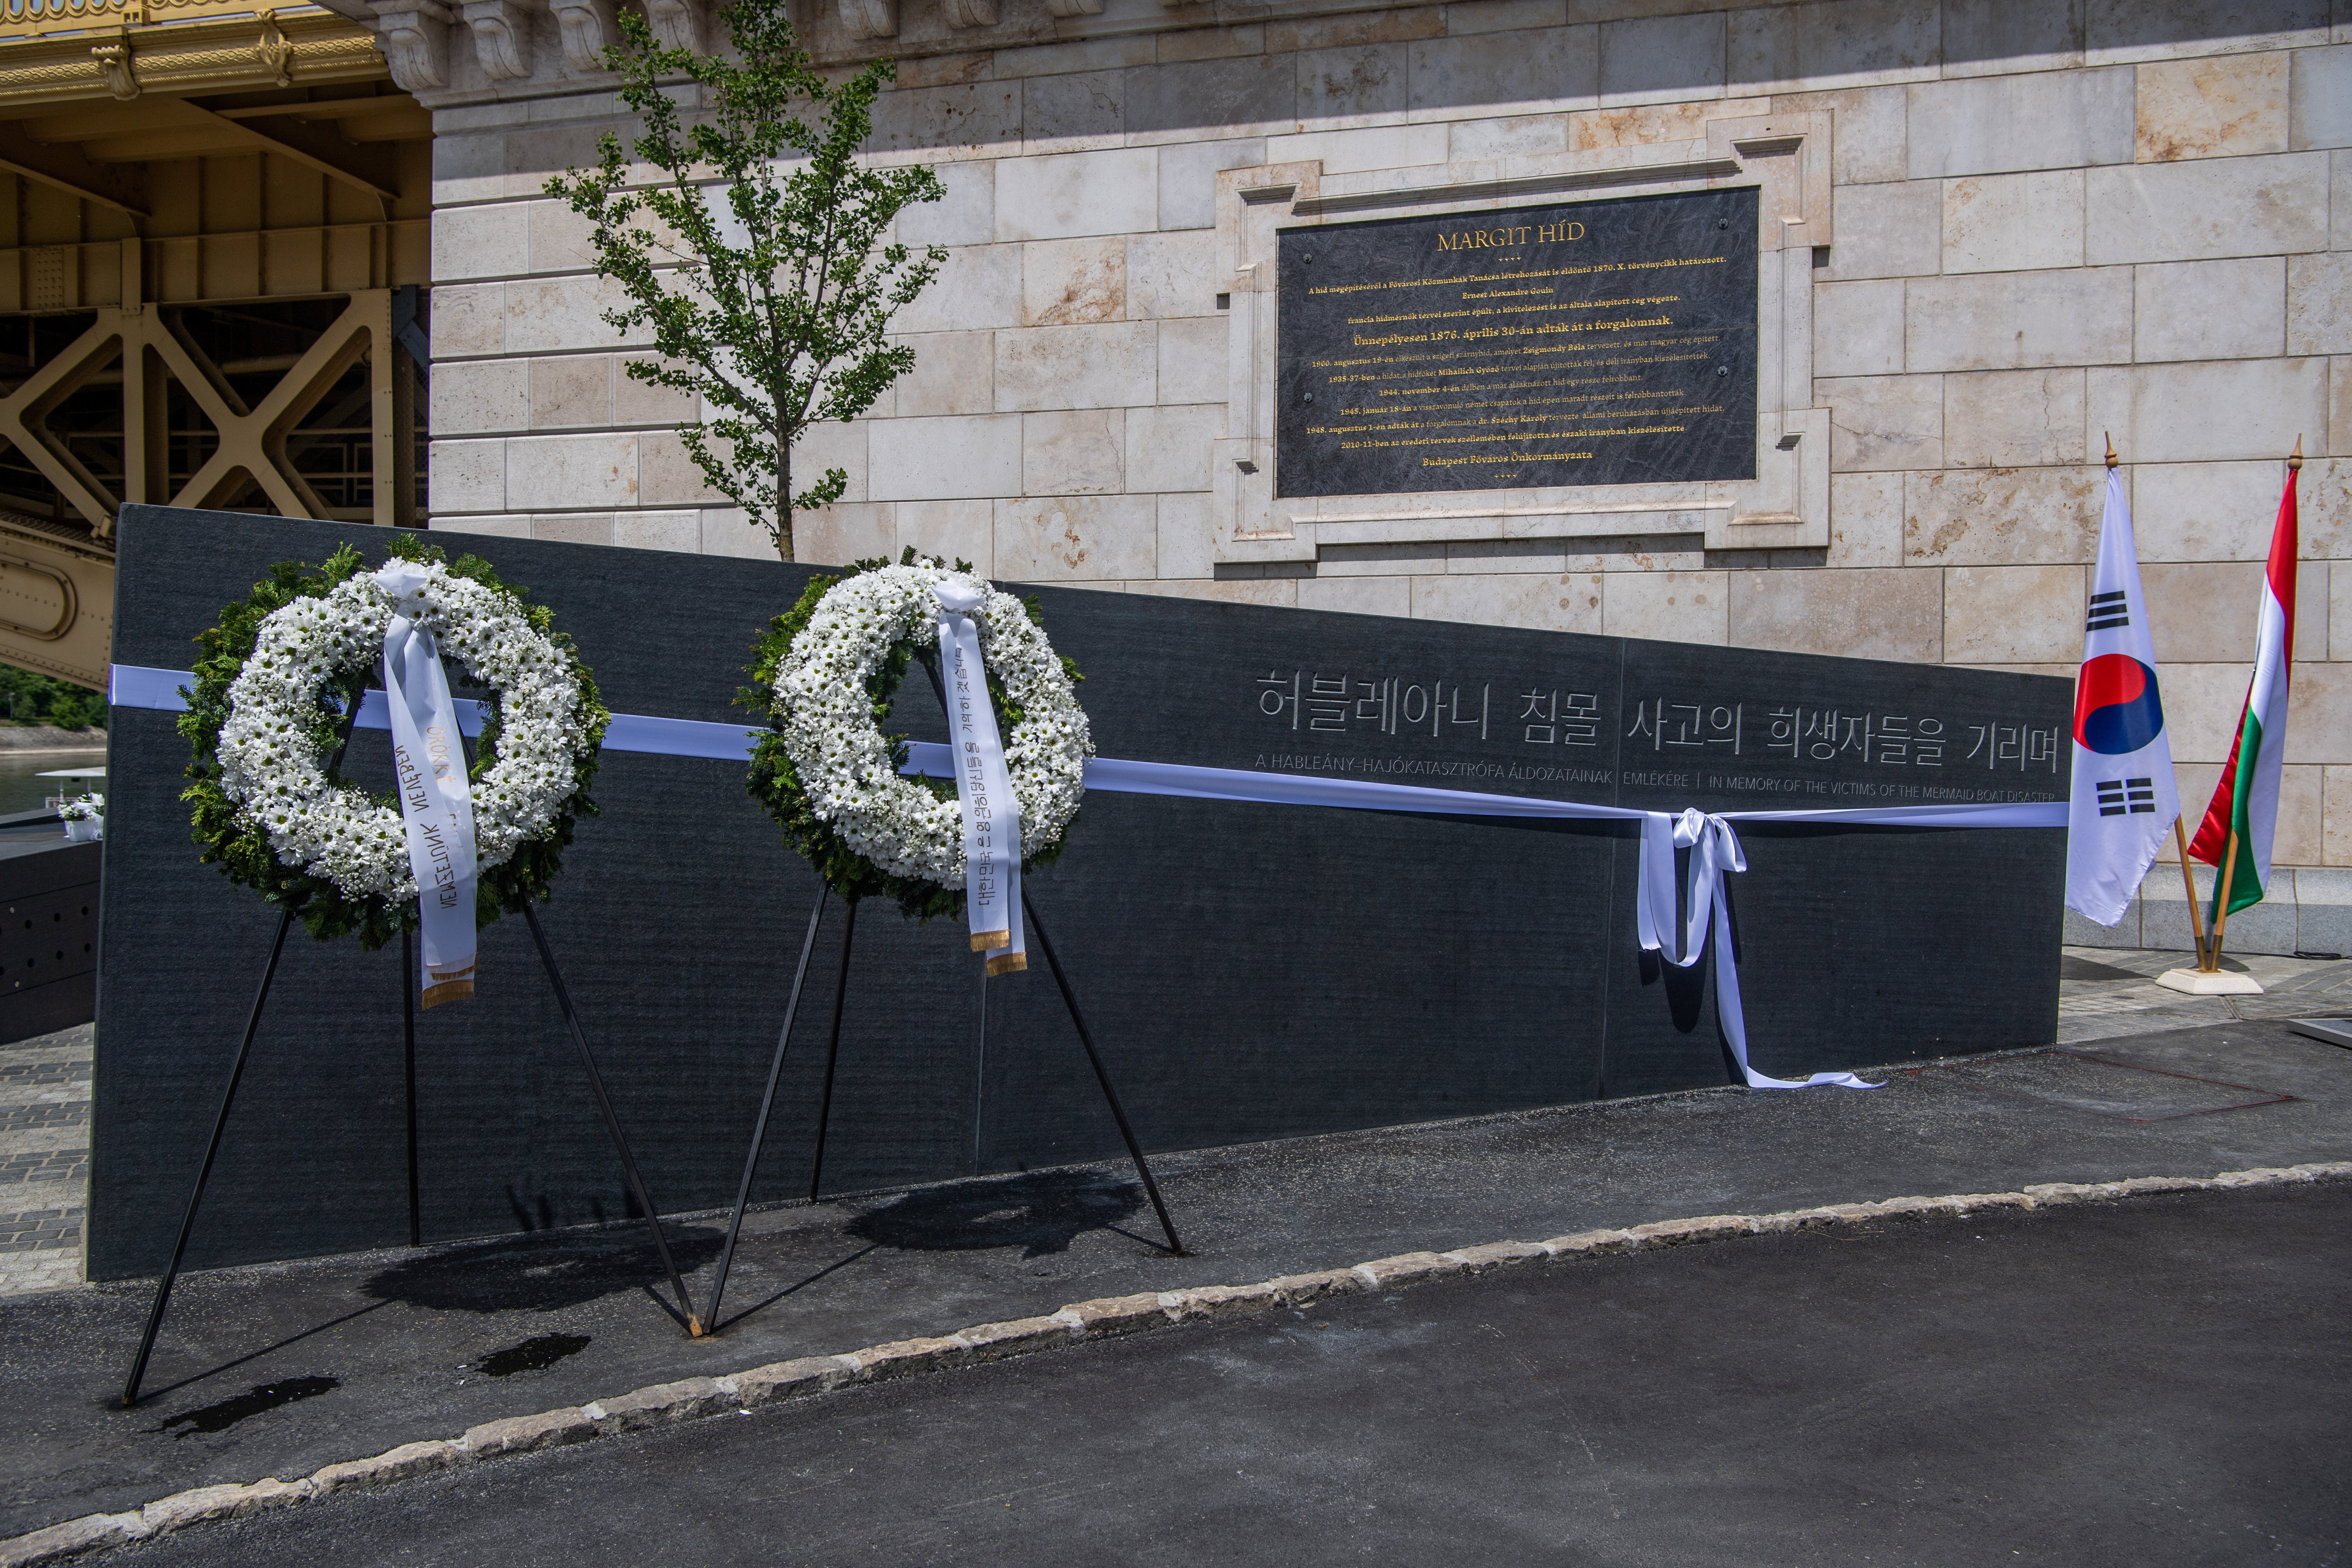 ドナウ川のボート衝突の犠牲者への記念碑が発足